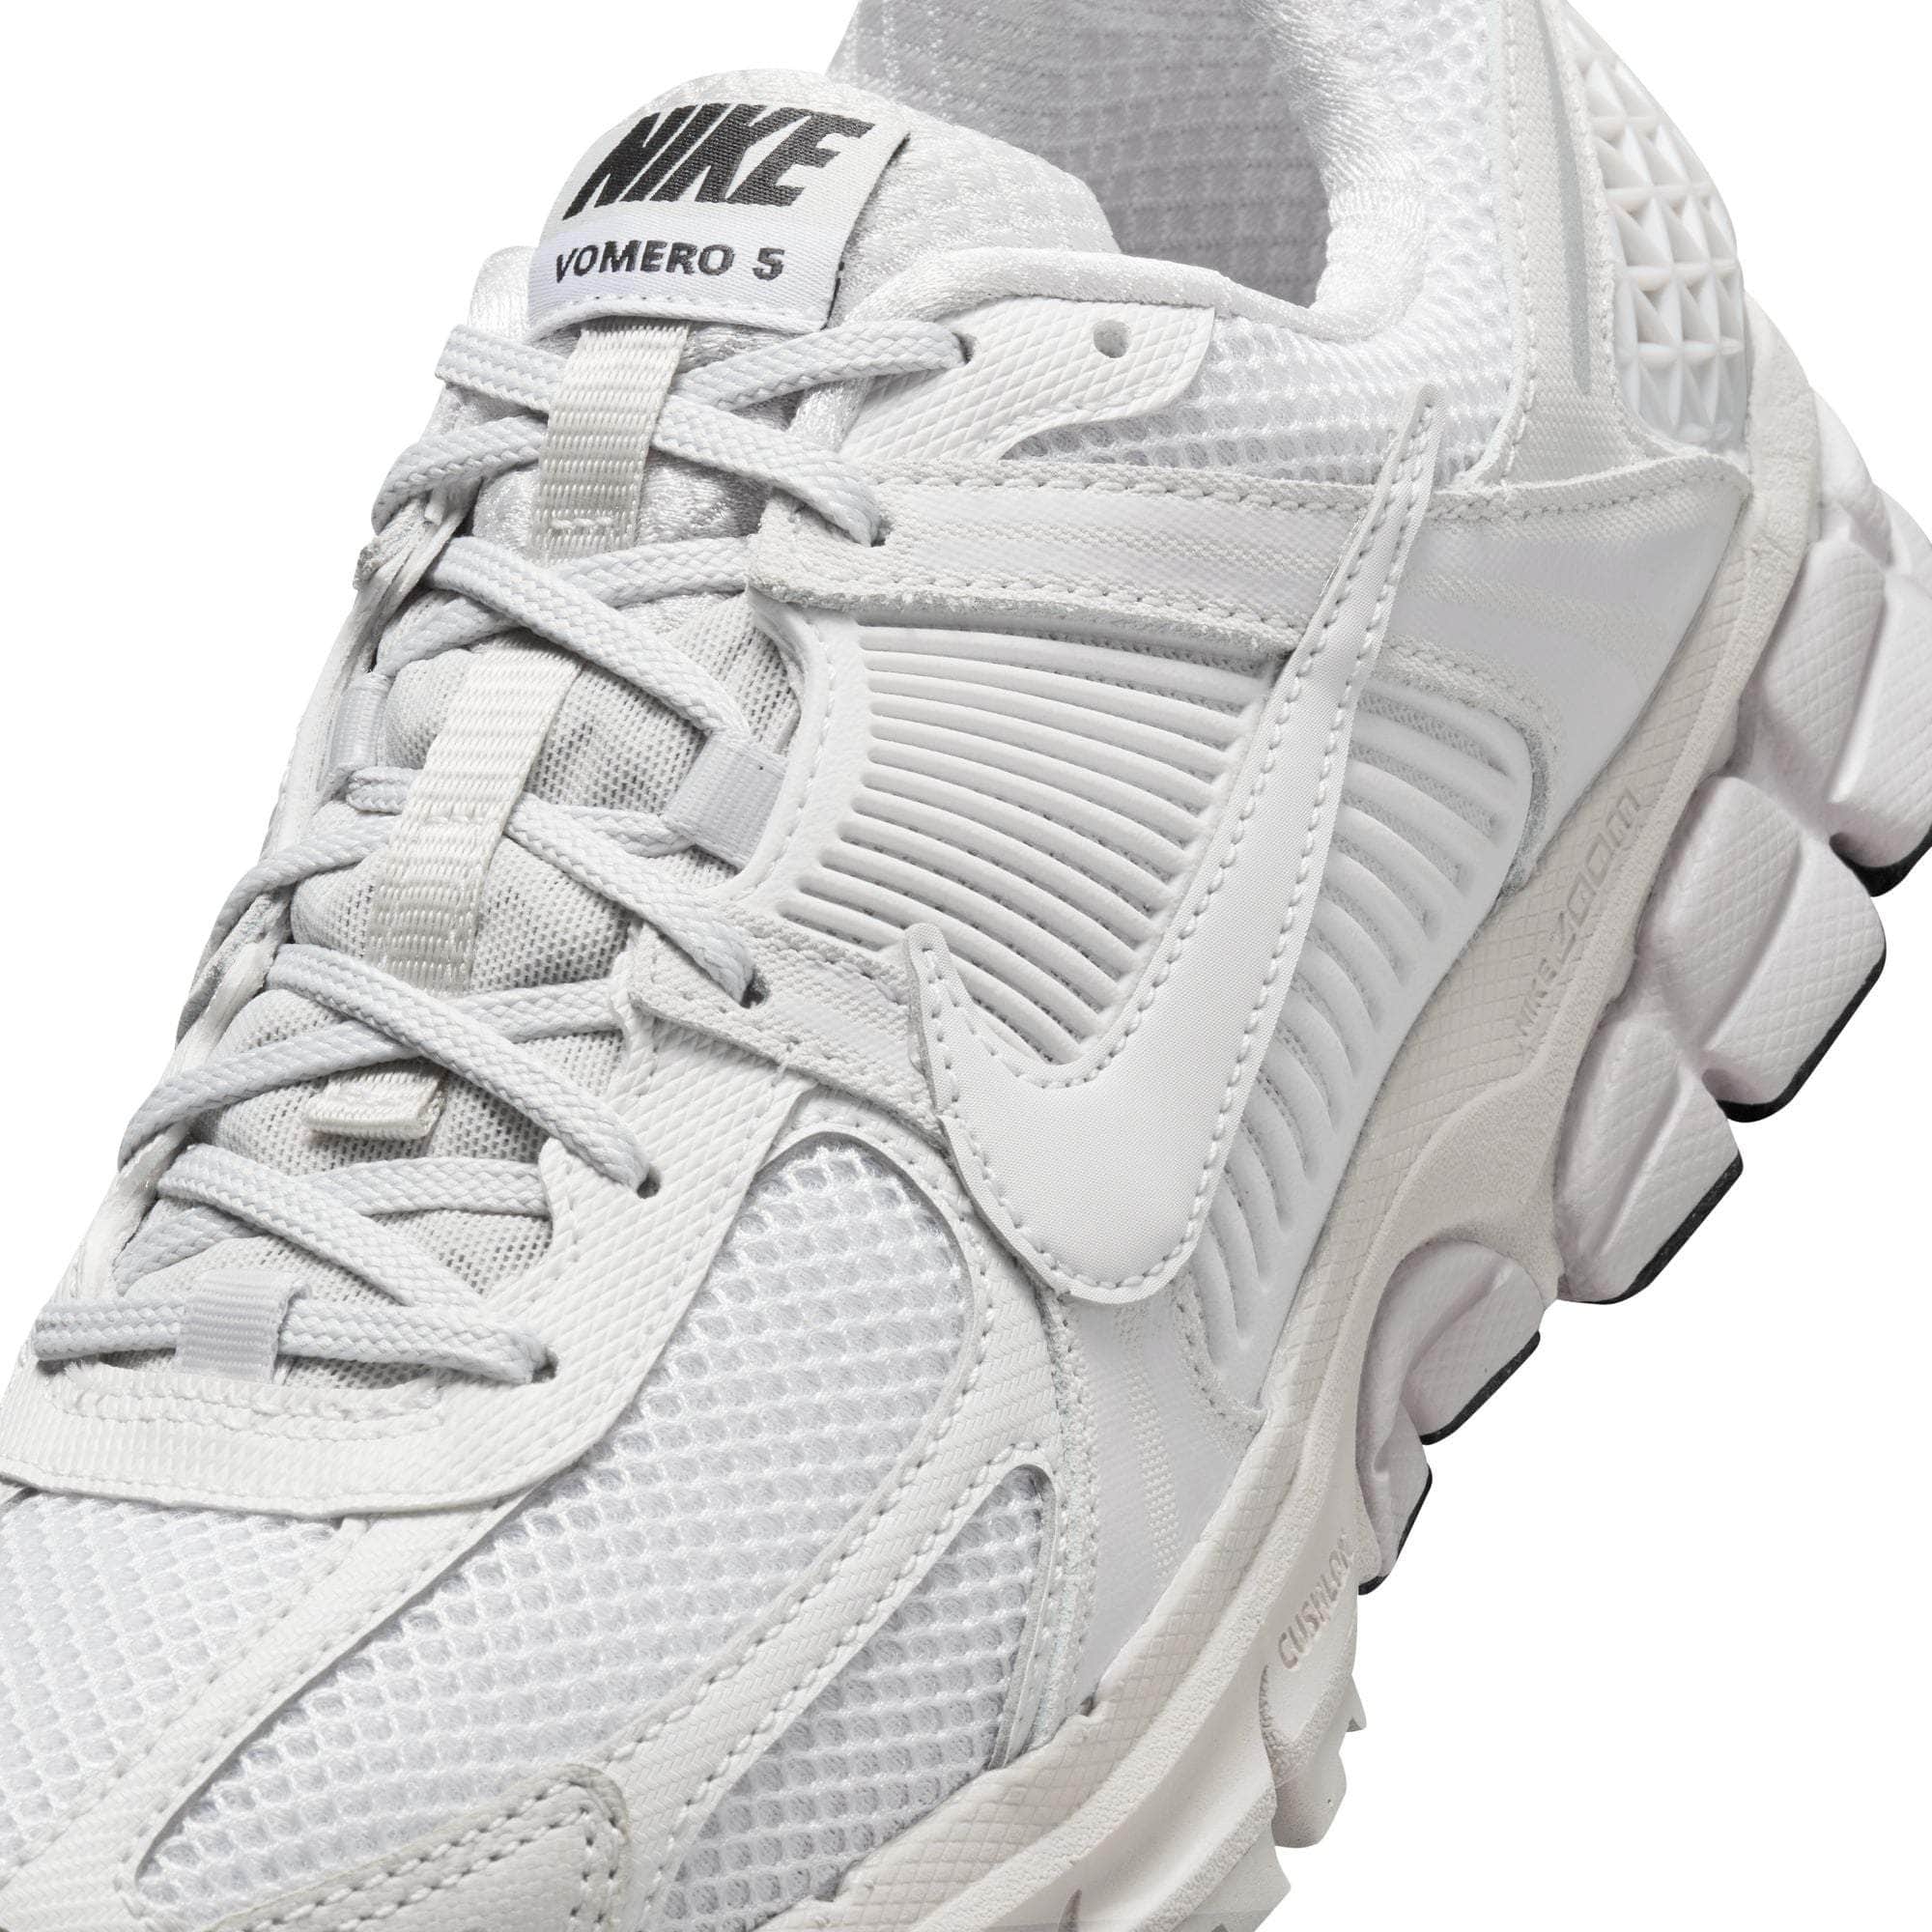 Nike FOOTWEAR Nike Zoom Vomero 5 "Vast Grey" - Women's